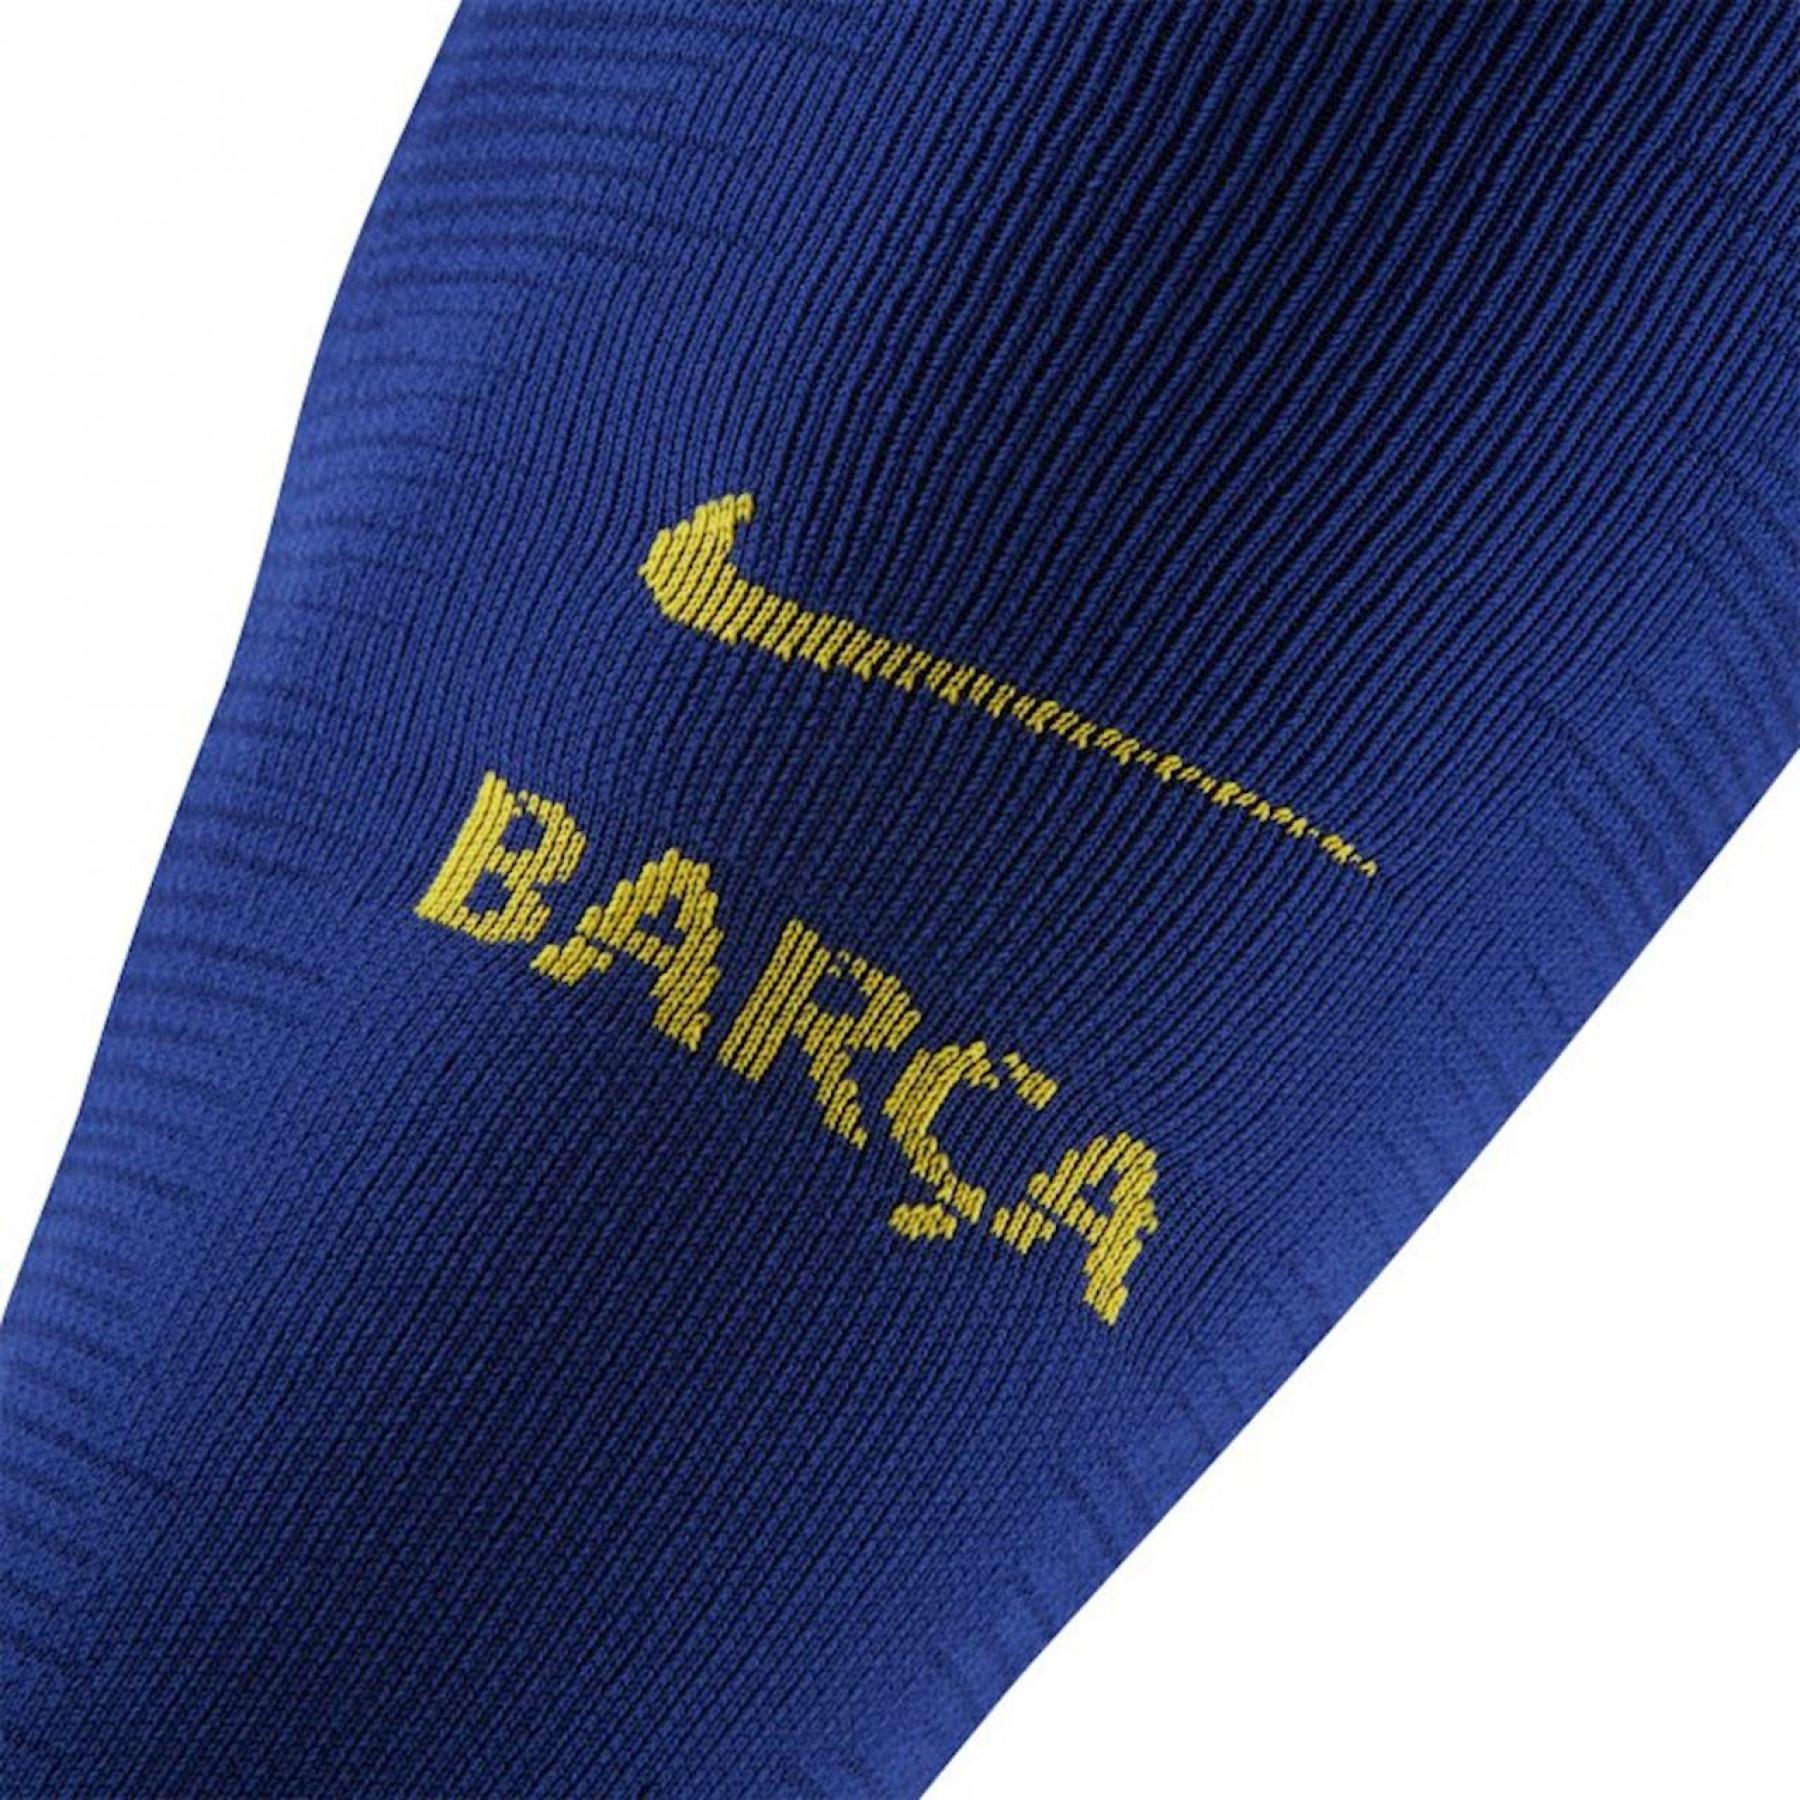 Authentische barcelona Socken 2019/20